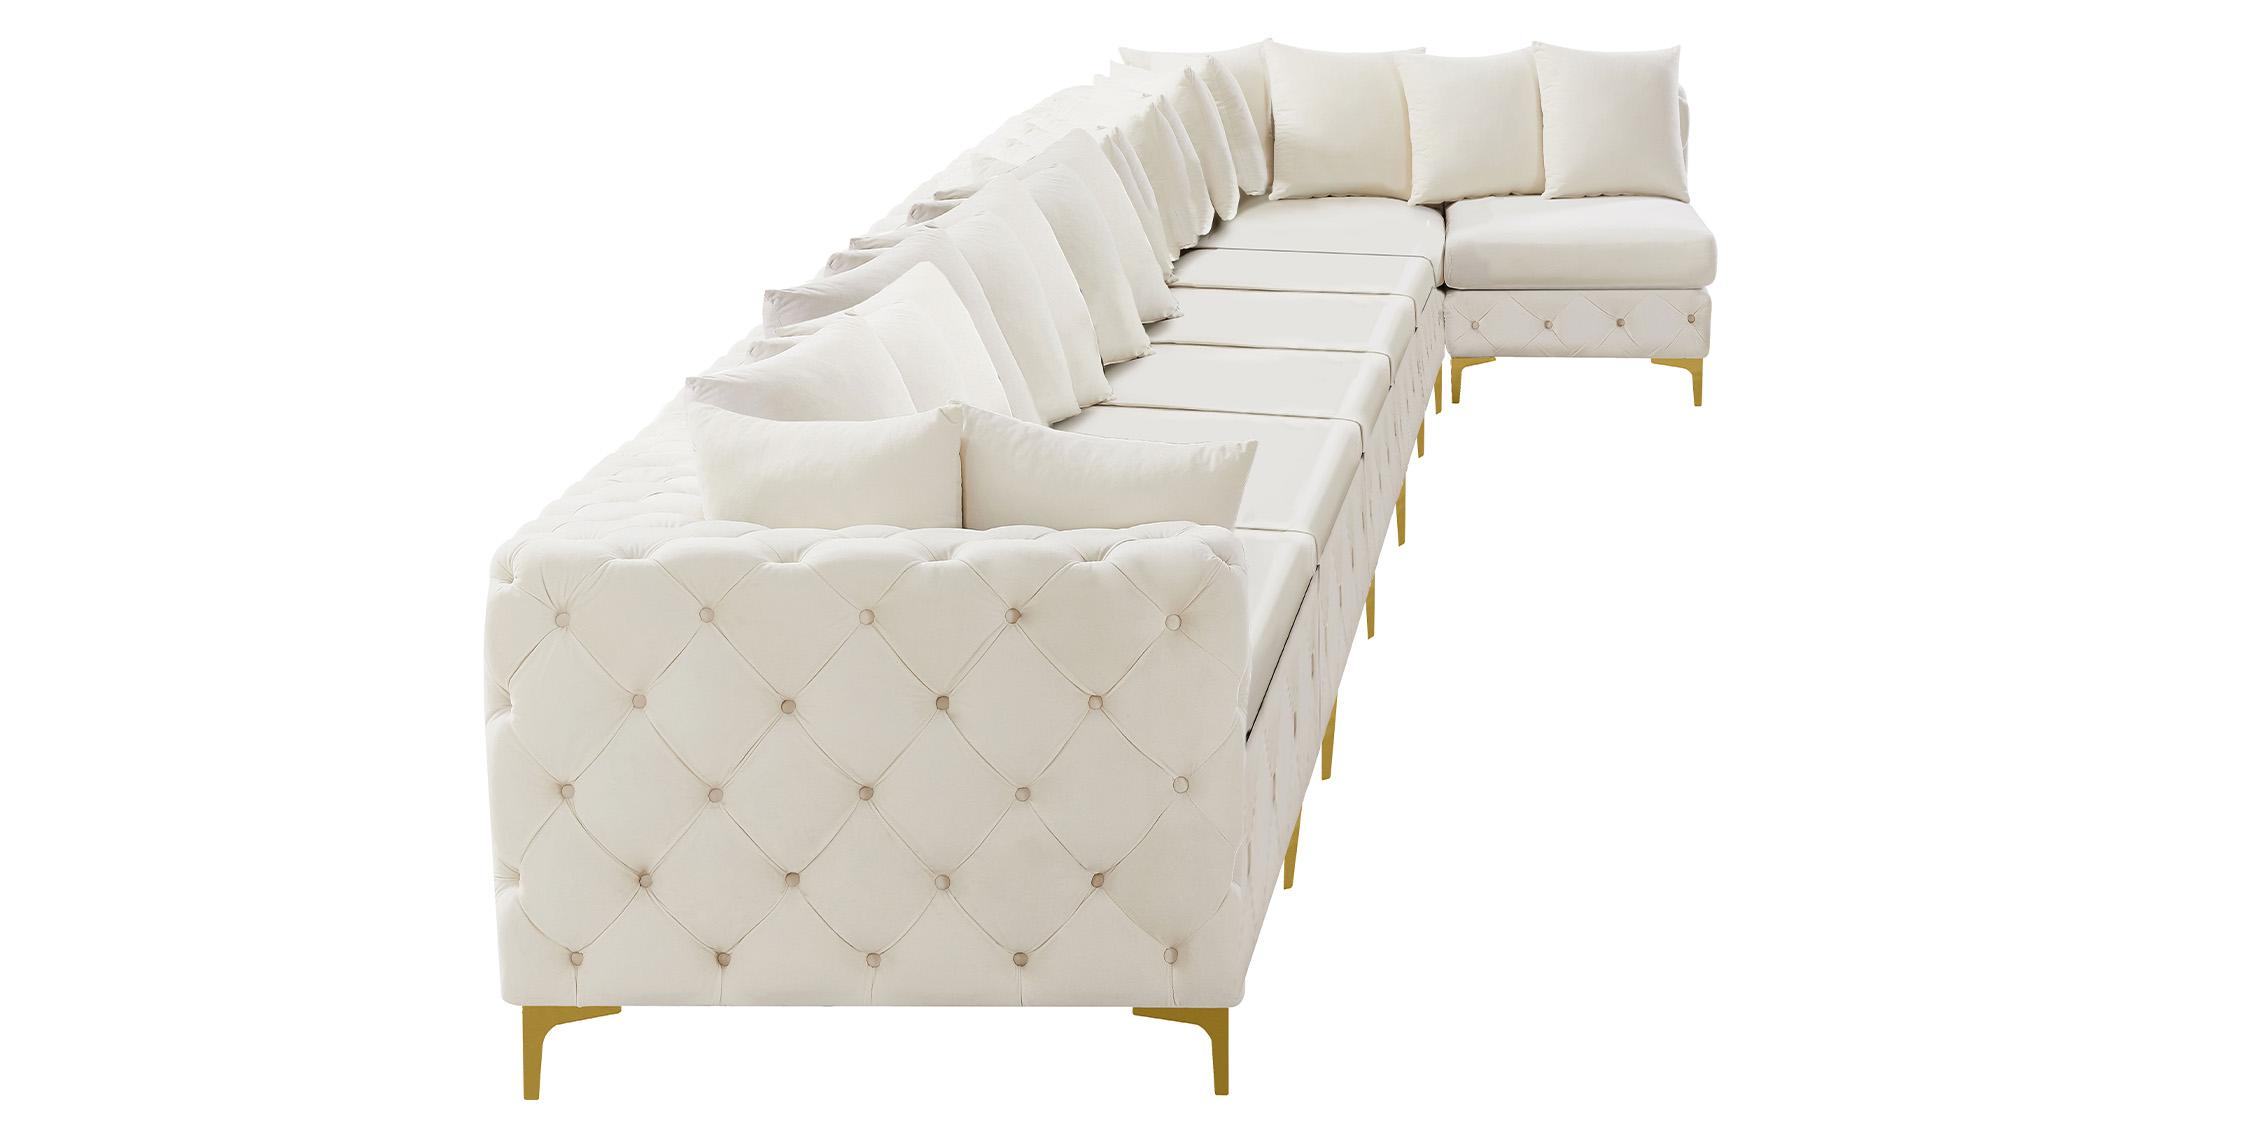 

    
Meridian Furniture TREMBLAY 686Cream-Sec8B Modular Sectional Sofa Cream 686Cream-Sec8B
